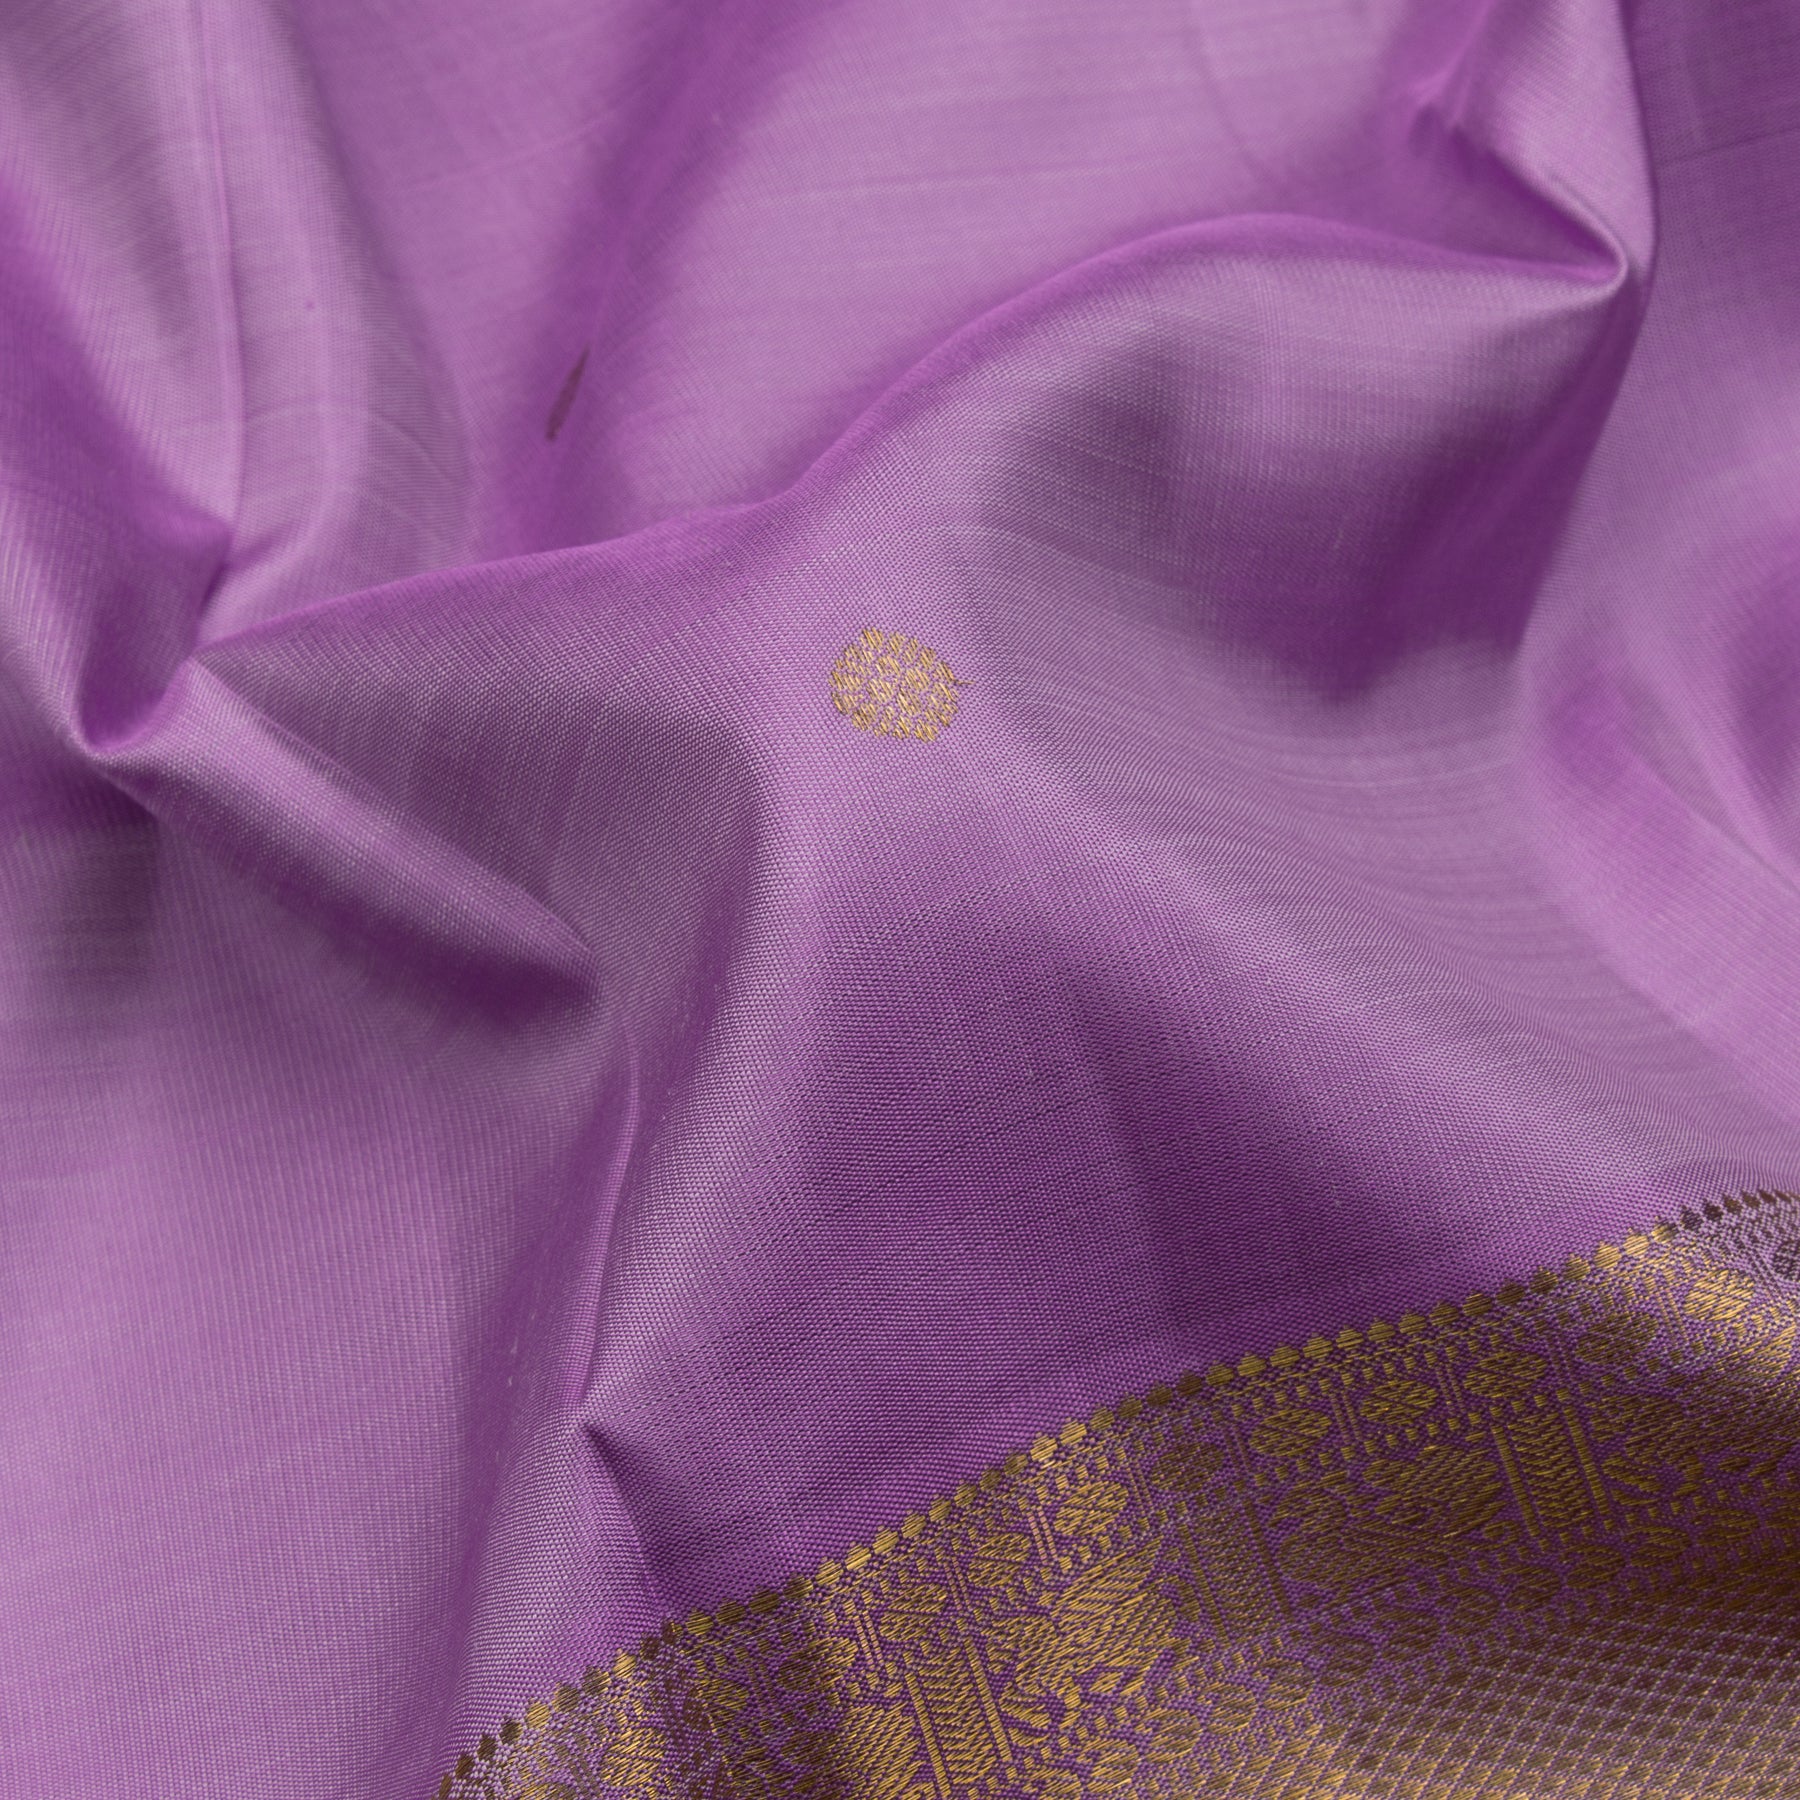 Kanakavalli Kanjivaram Silk Sari 22-110-HS001-13589 - Fabric View